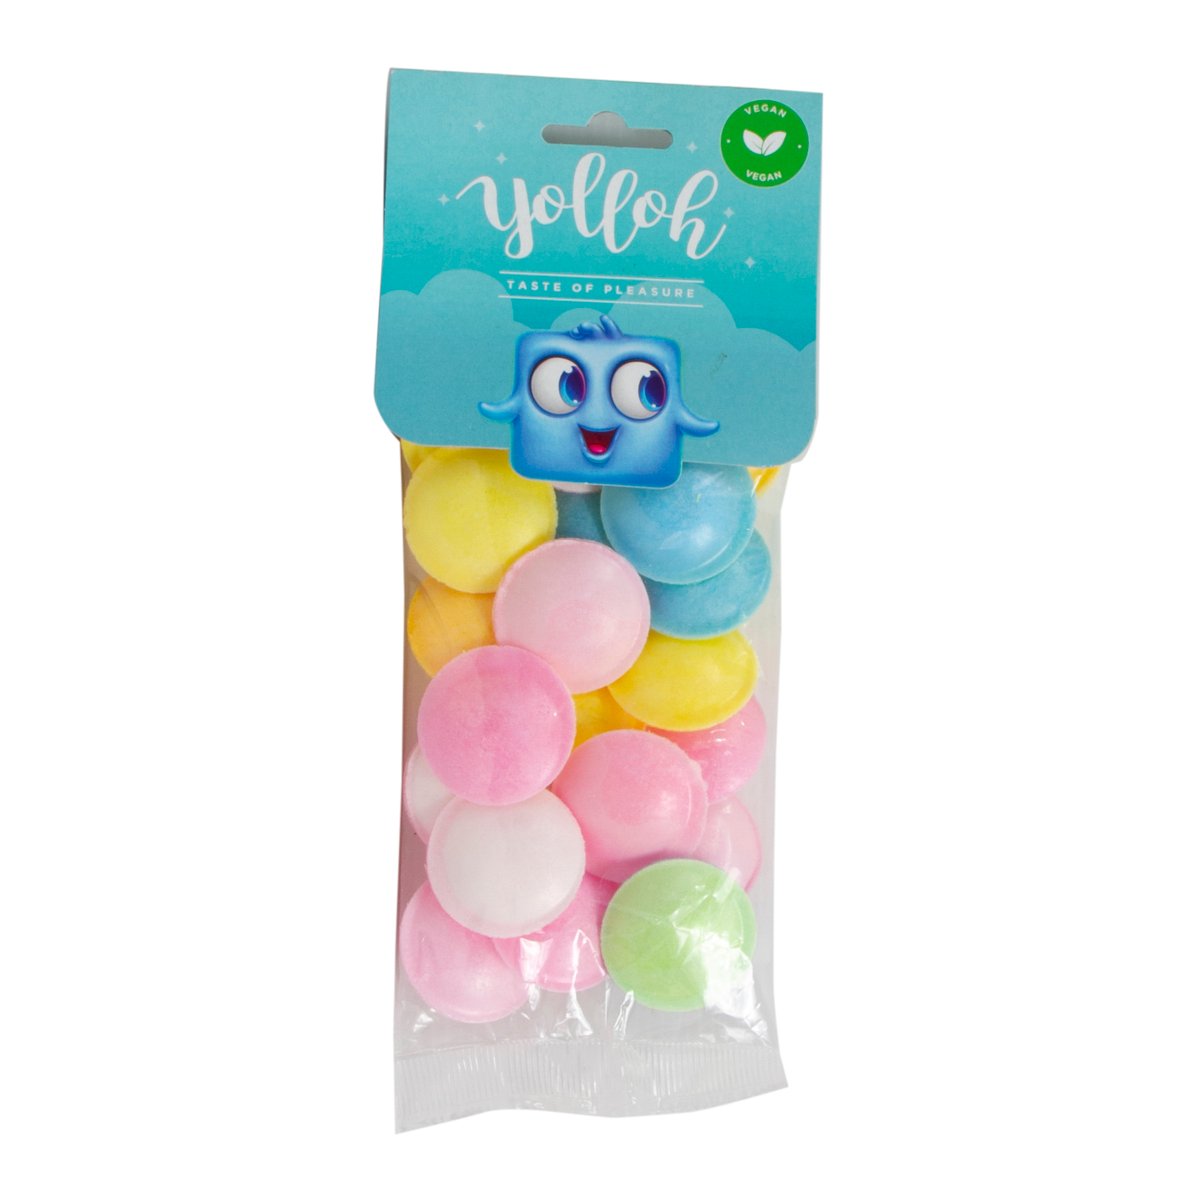 Yolloh Taste Of Pleasure Ufos 25 G Online At Best Price Candy Bags Lulu Ksa Price In Saudi 5605